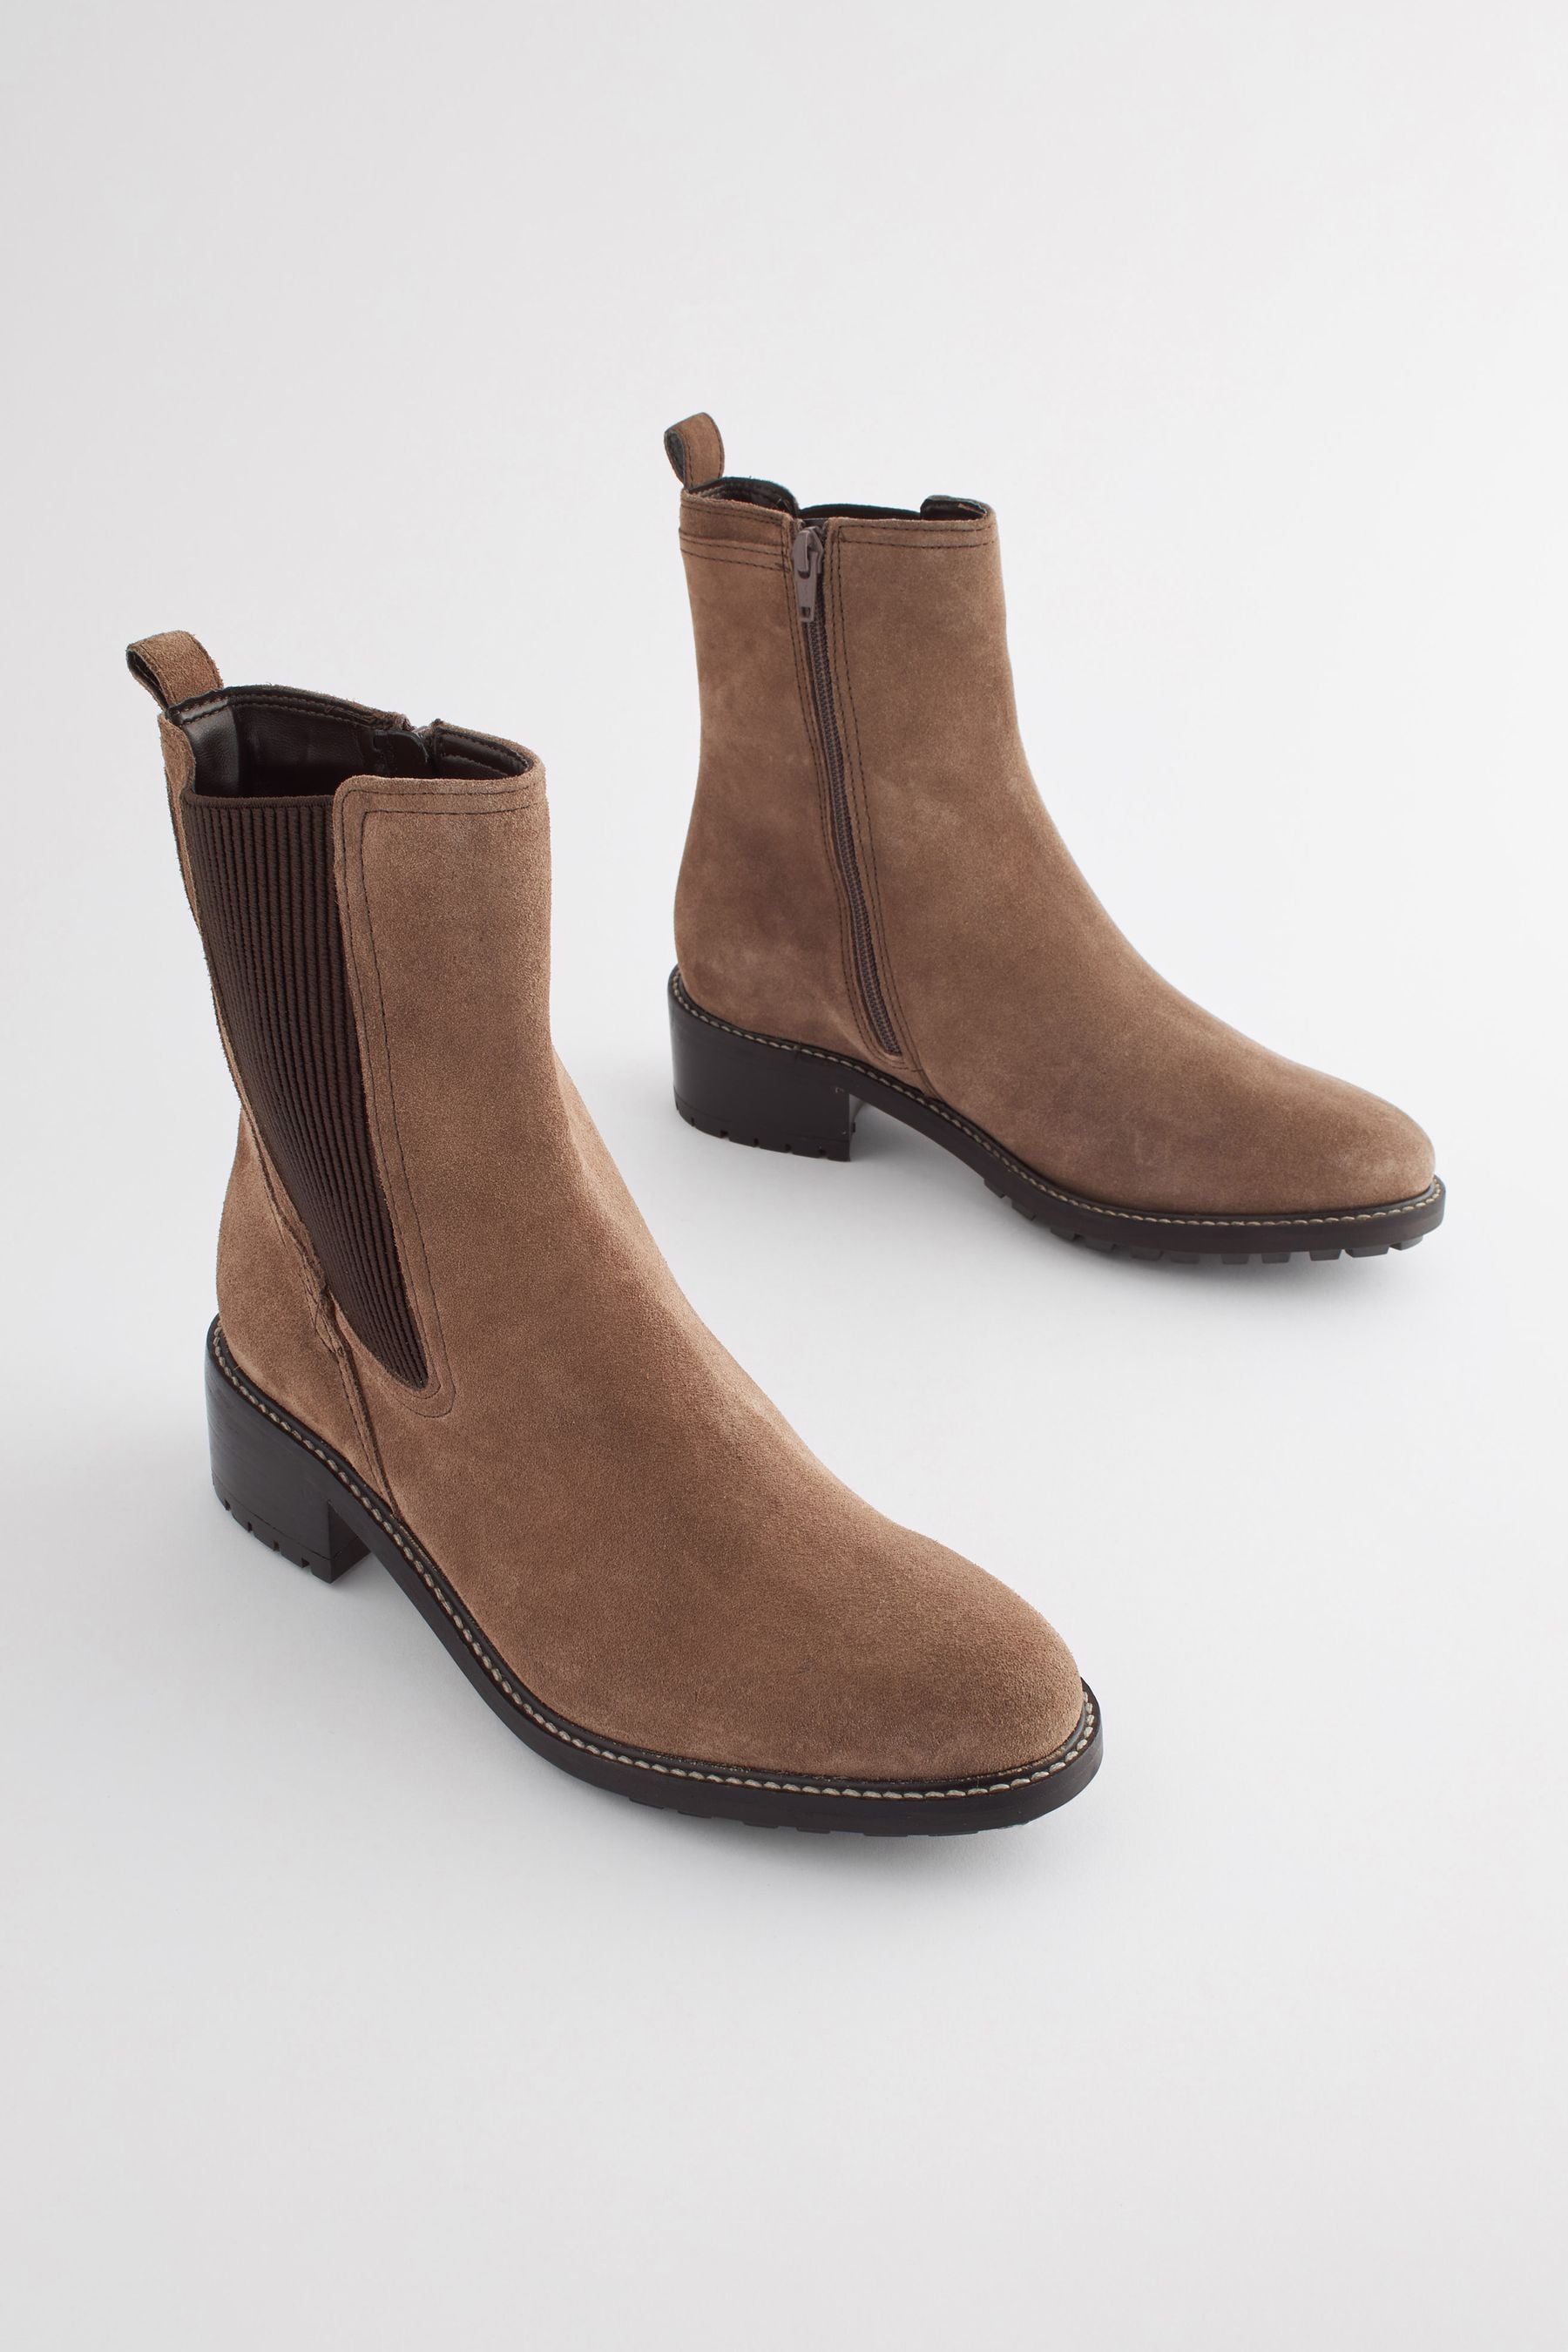 Ботинки челси Forever Comfort Next, коричневый кожаные ботинки челси forever comfort на блочном каблуке ботильоны и ботинки next коричневый